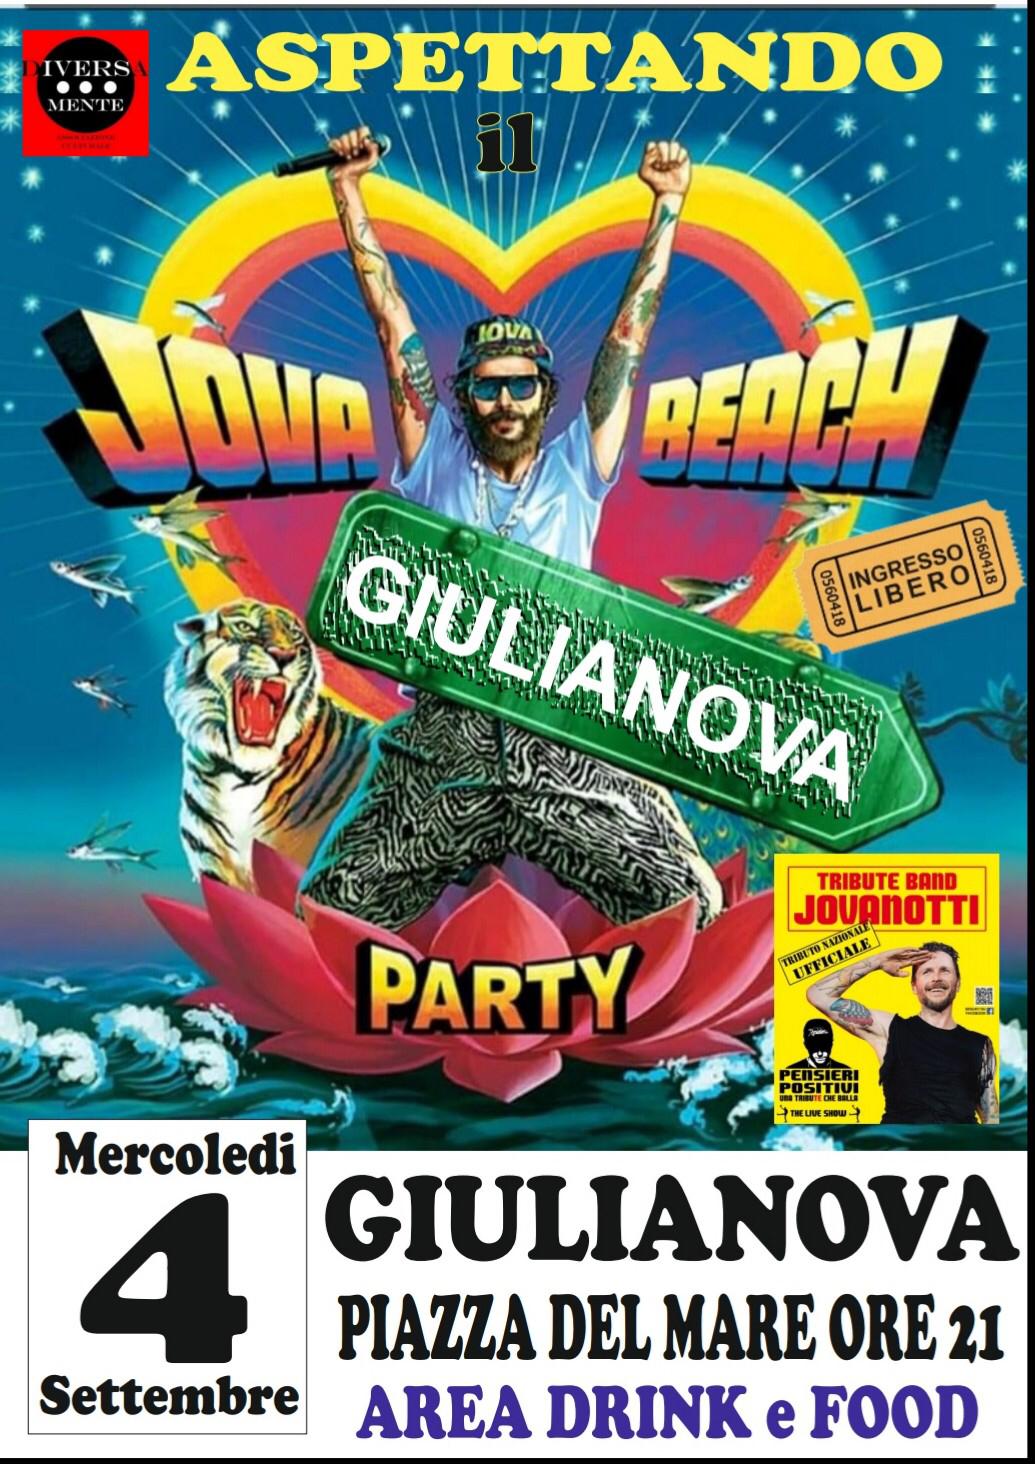 Aspettando_il_Jova_Beach_Party_con_la_tribute_band_di_Jovanotti_a_Giulianova.jpg